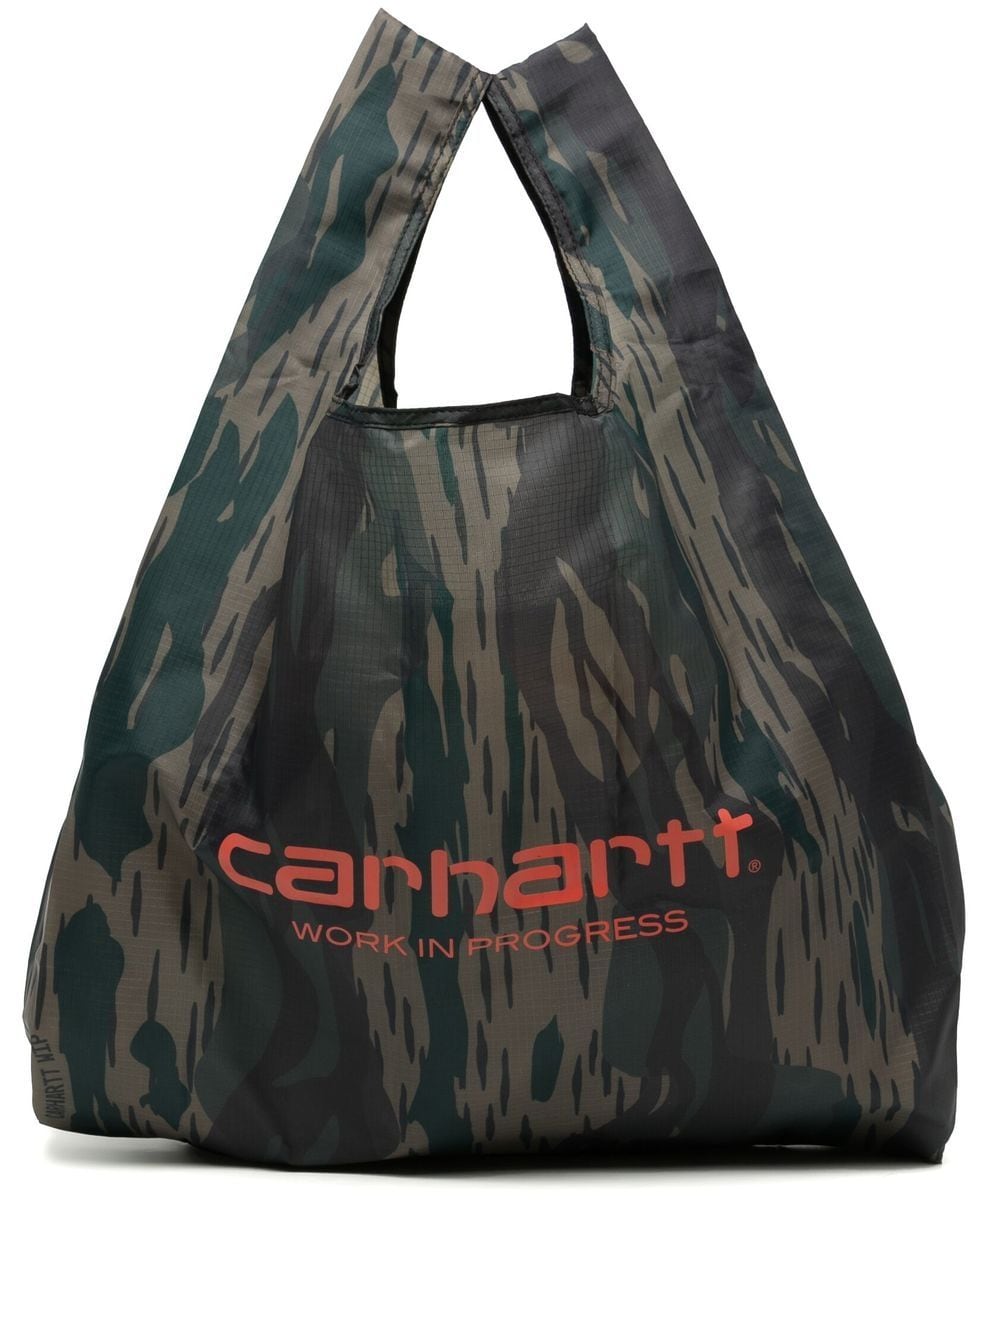 Carhartt bag ______ #skateshop